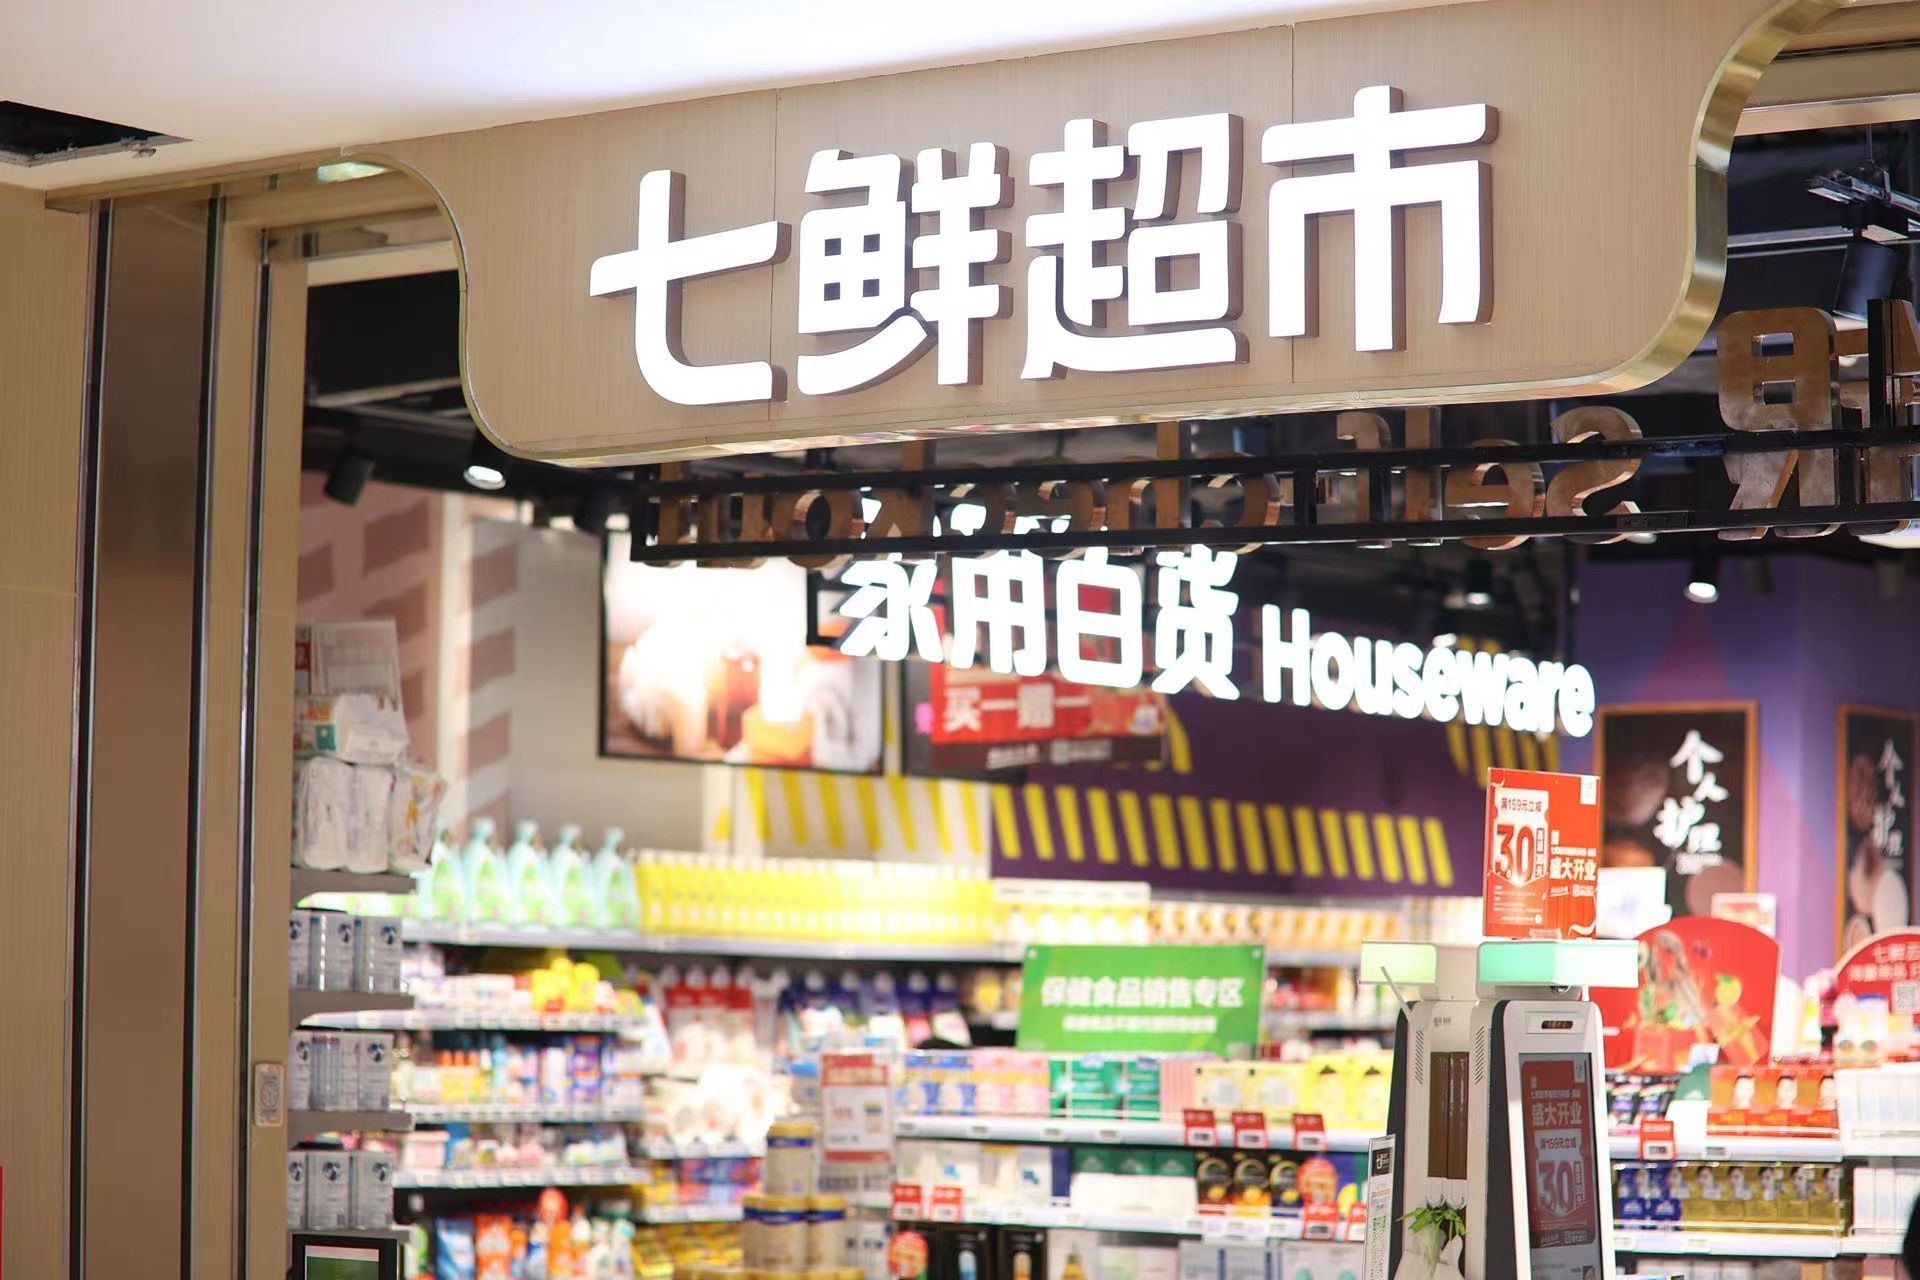 深圳京东七鲜超市十余类民生商品备货量增五倍